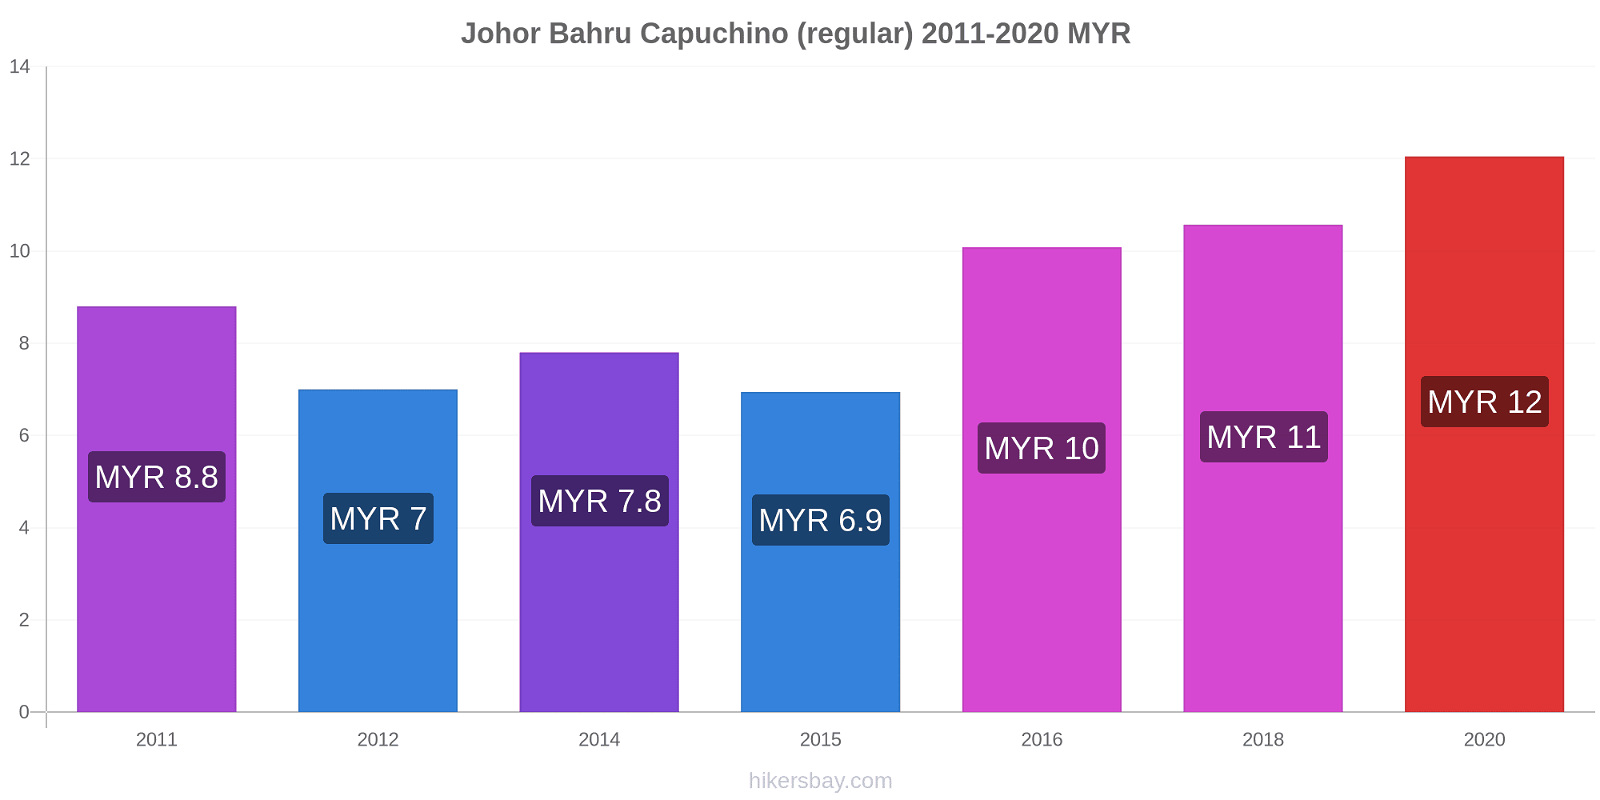 Johor Bahru cambios de precios Capuchino (regular) hikersbay.com